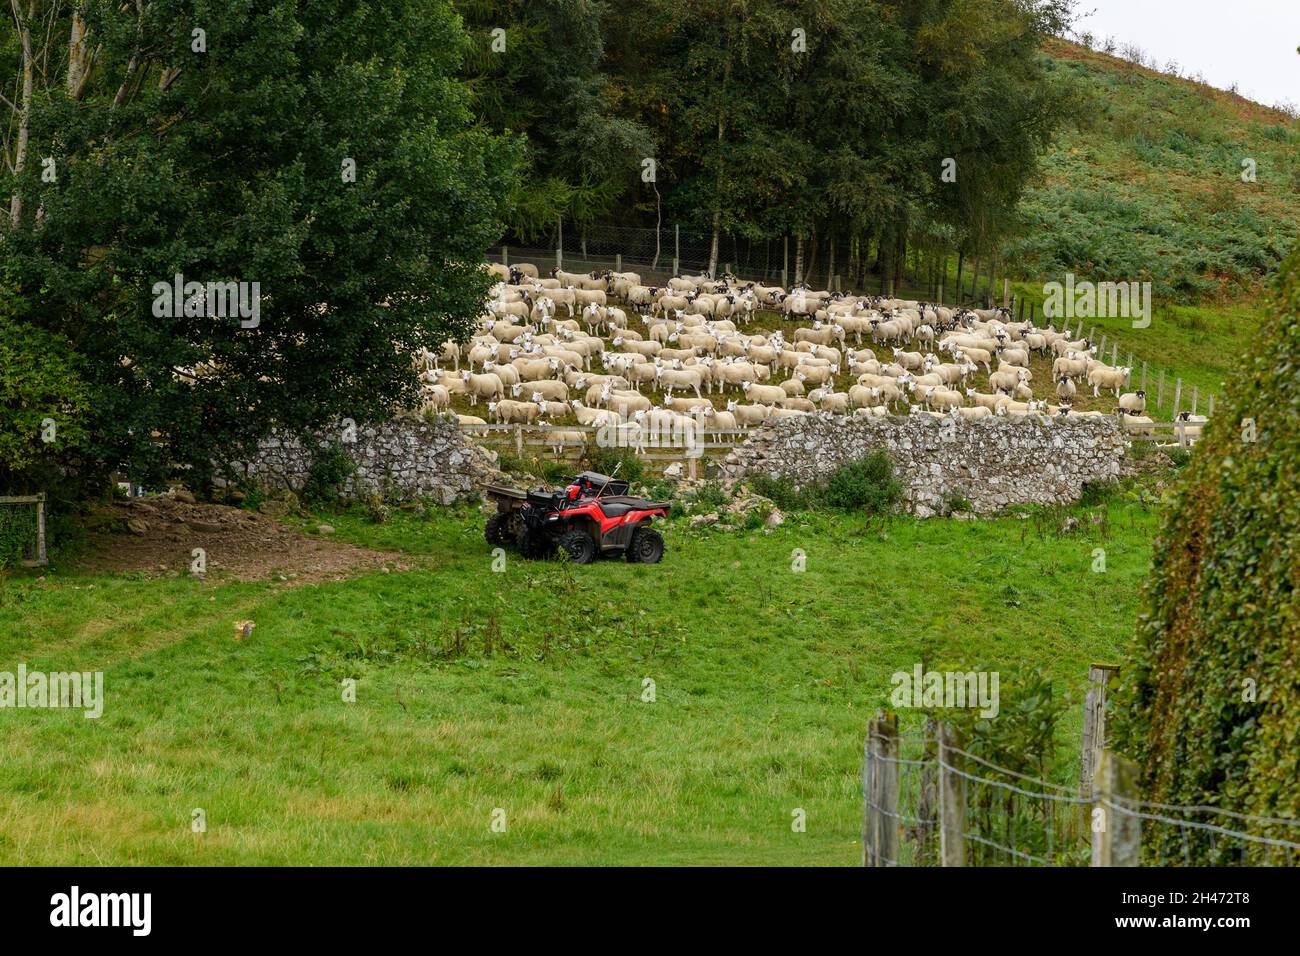 Sheep Herd in Northumberland, UK Stock Photo